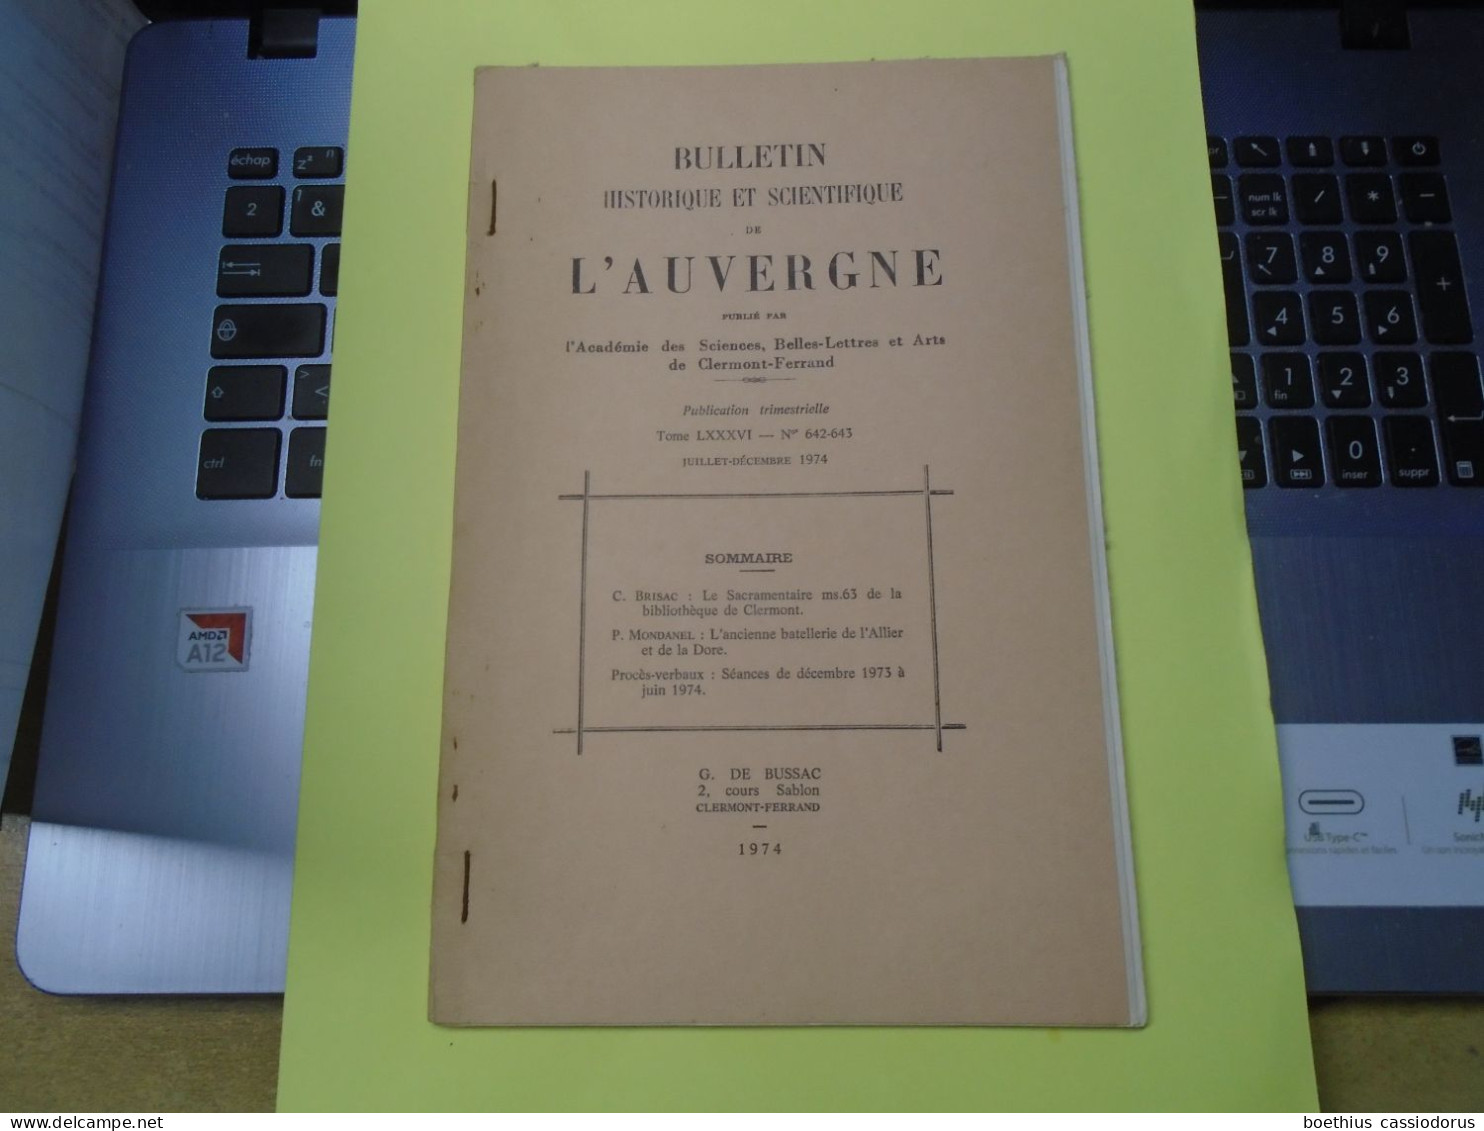 BULLETIN HISTORIQUE SCIENT. AUVERGNE T. LXXXVI N° 642-643 1974 SACRAMENTAIRE Ms.63 Biblioth. Clermont Batellerie Allier - Auvergne